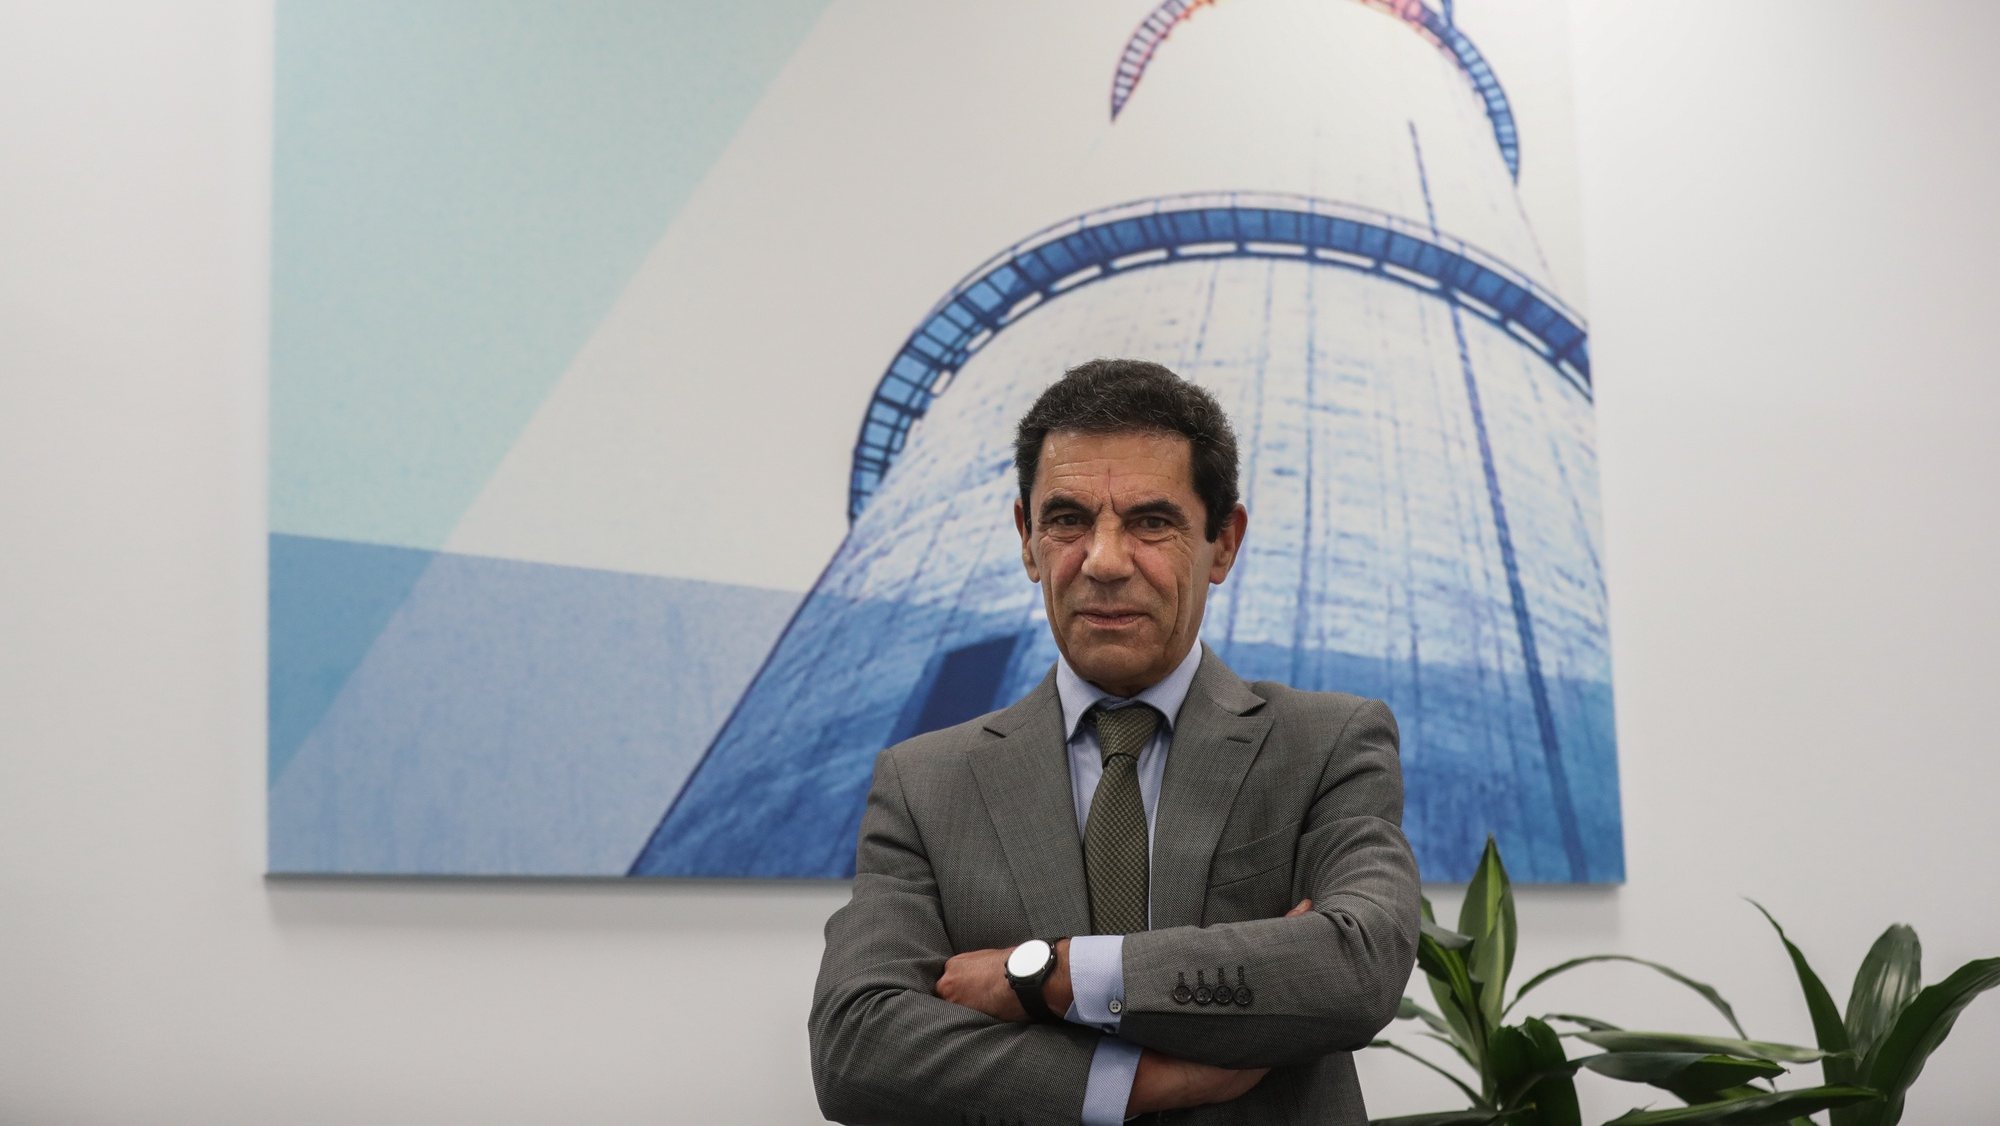 O CEO da Endesa Portugal, Nuno Ribeiro da Silva, fala em entrevista à Agência Lusa na sede em Lisboa, 10 de março de 2022. (ACOMPANHA TEXTO DA LUSA DIA 11 MARÇO 2022).  TIAGO PETINGA/LUSA